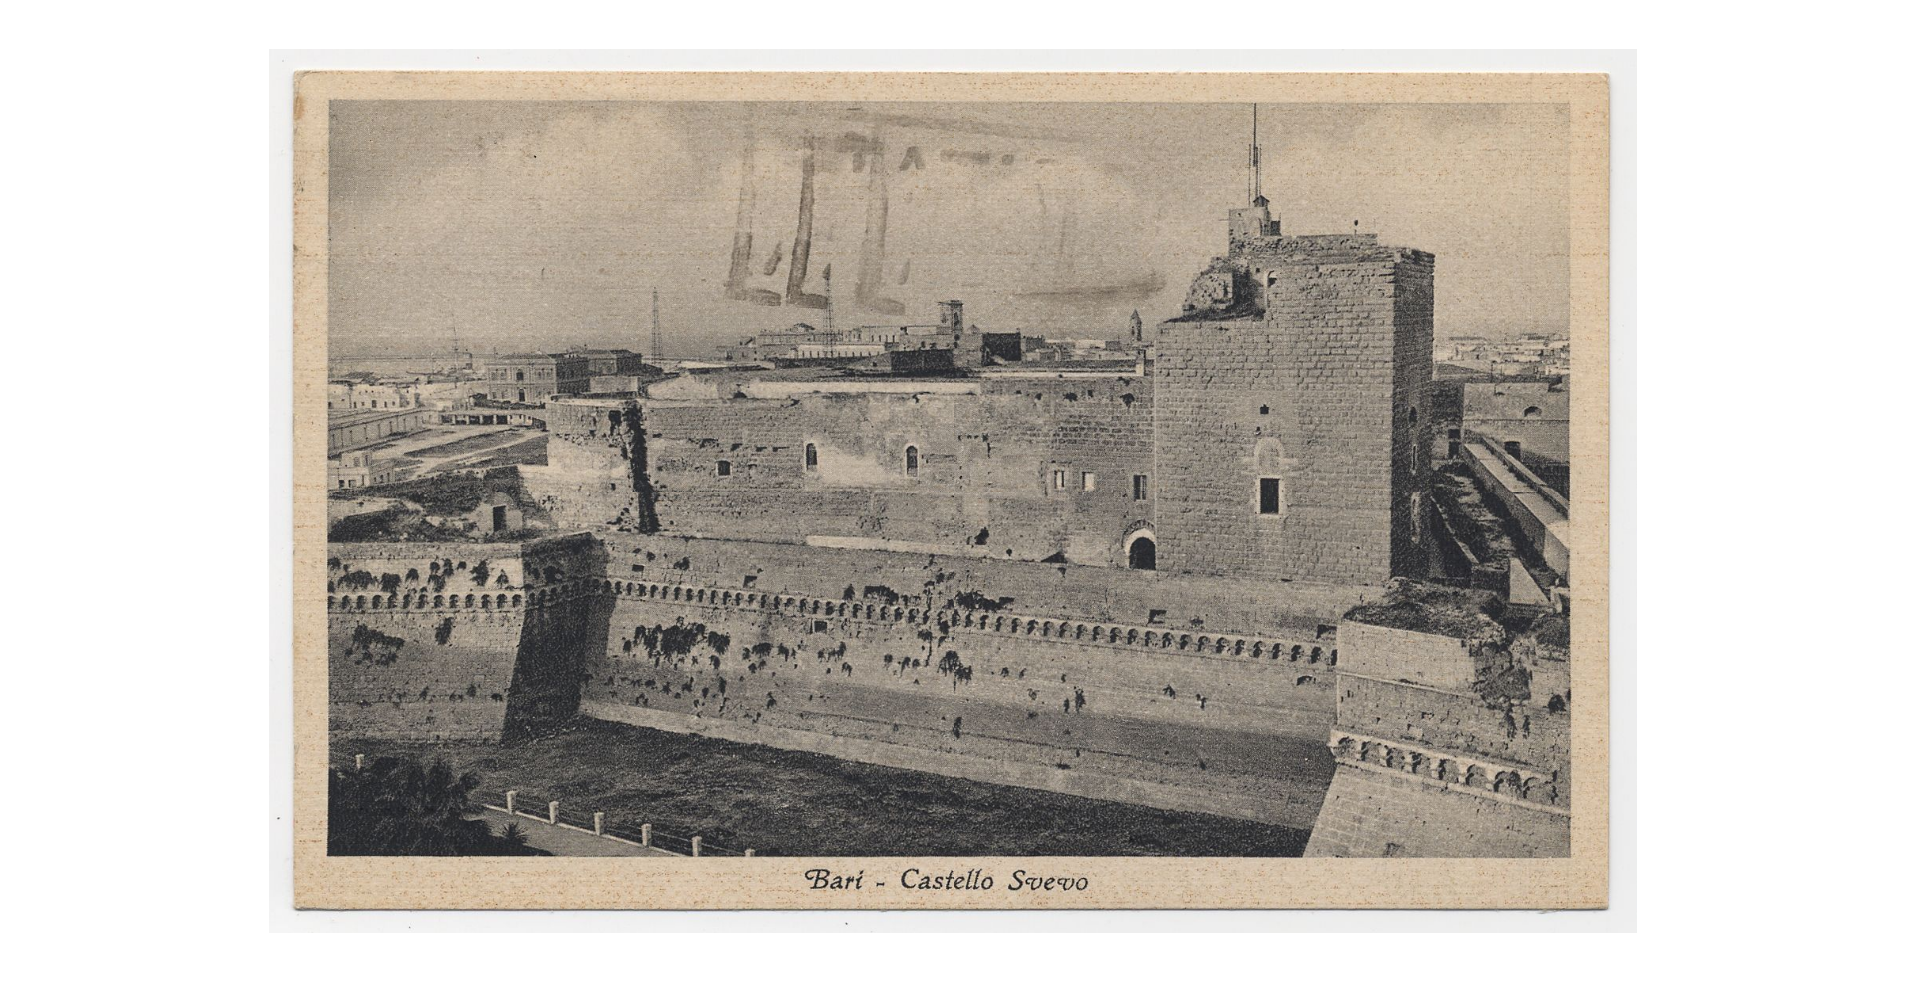 Fotografo non identificato, Bari - Castello Svevo, 1939, cartolina, FFC018226